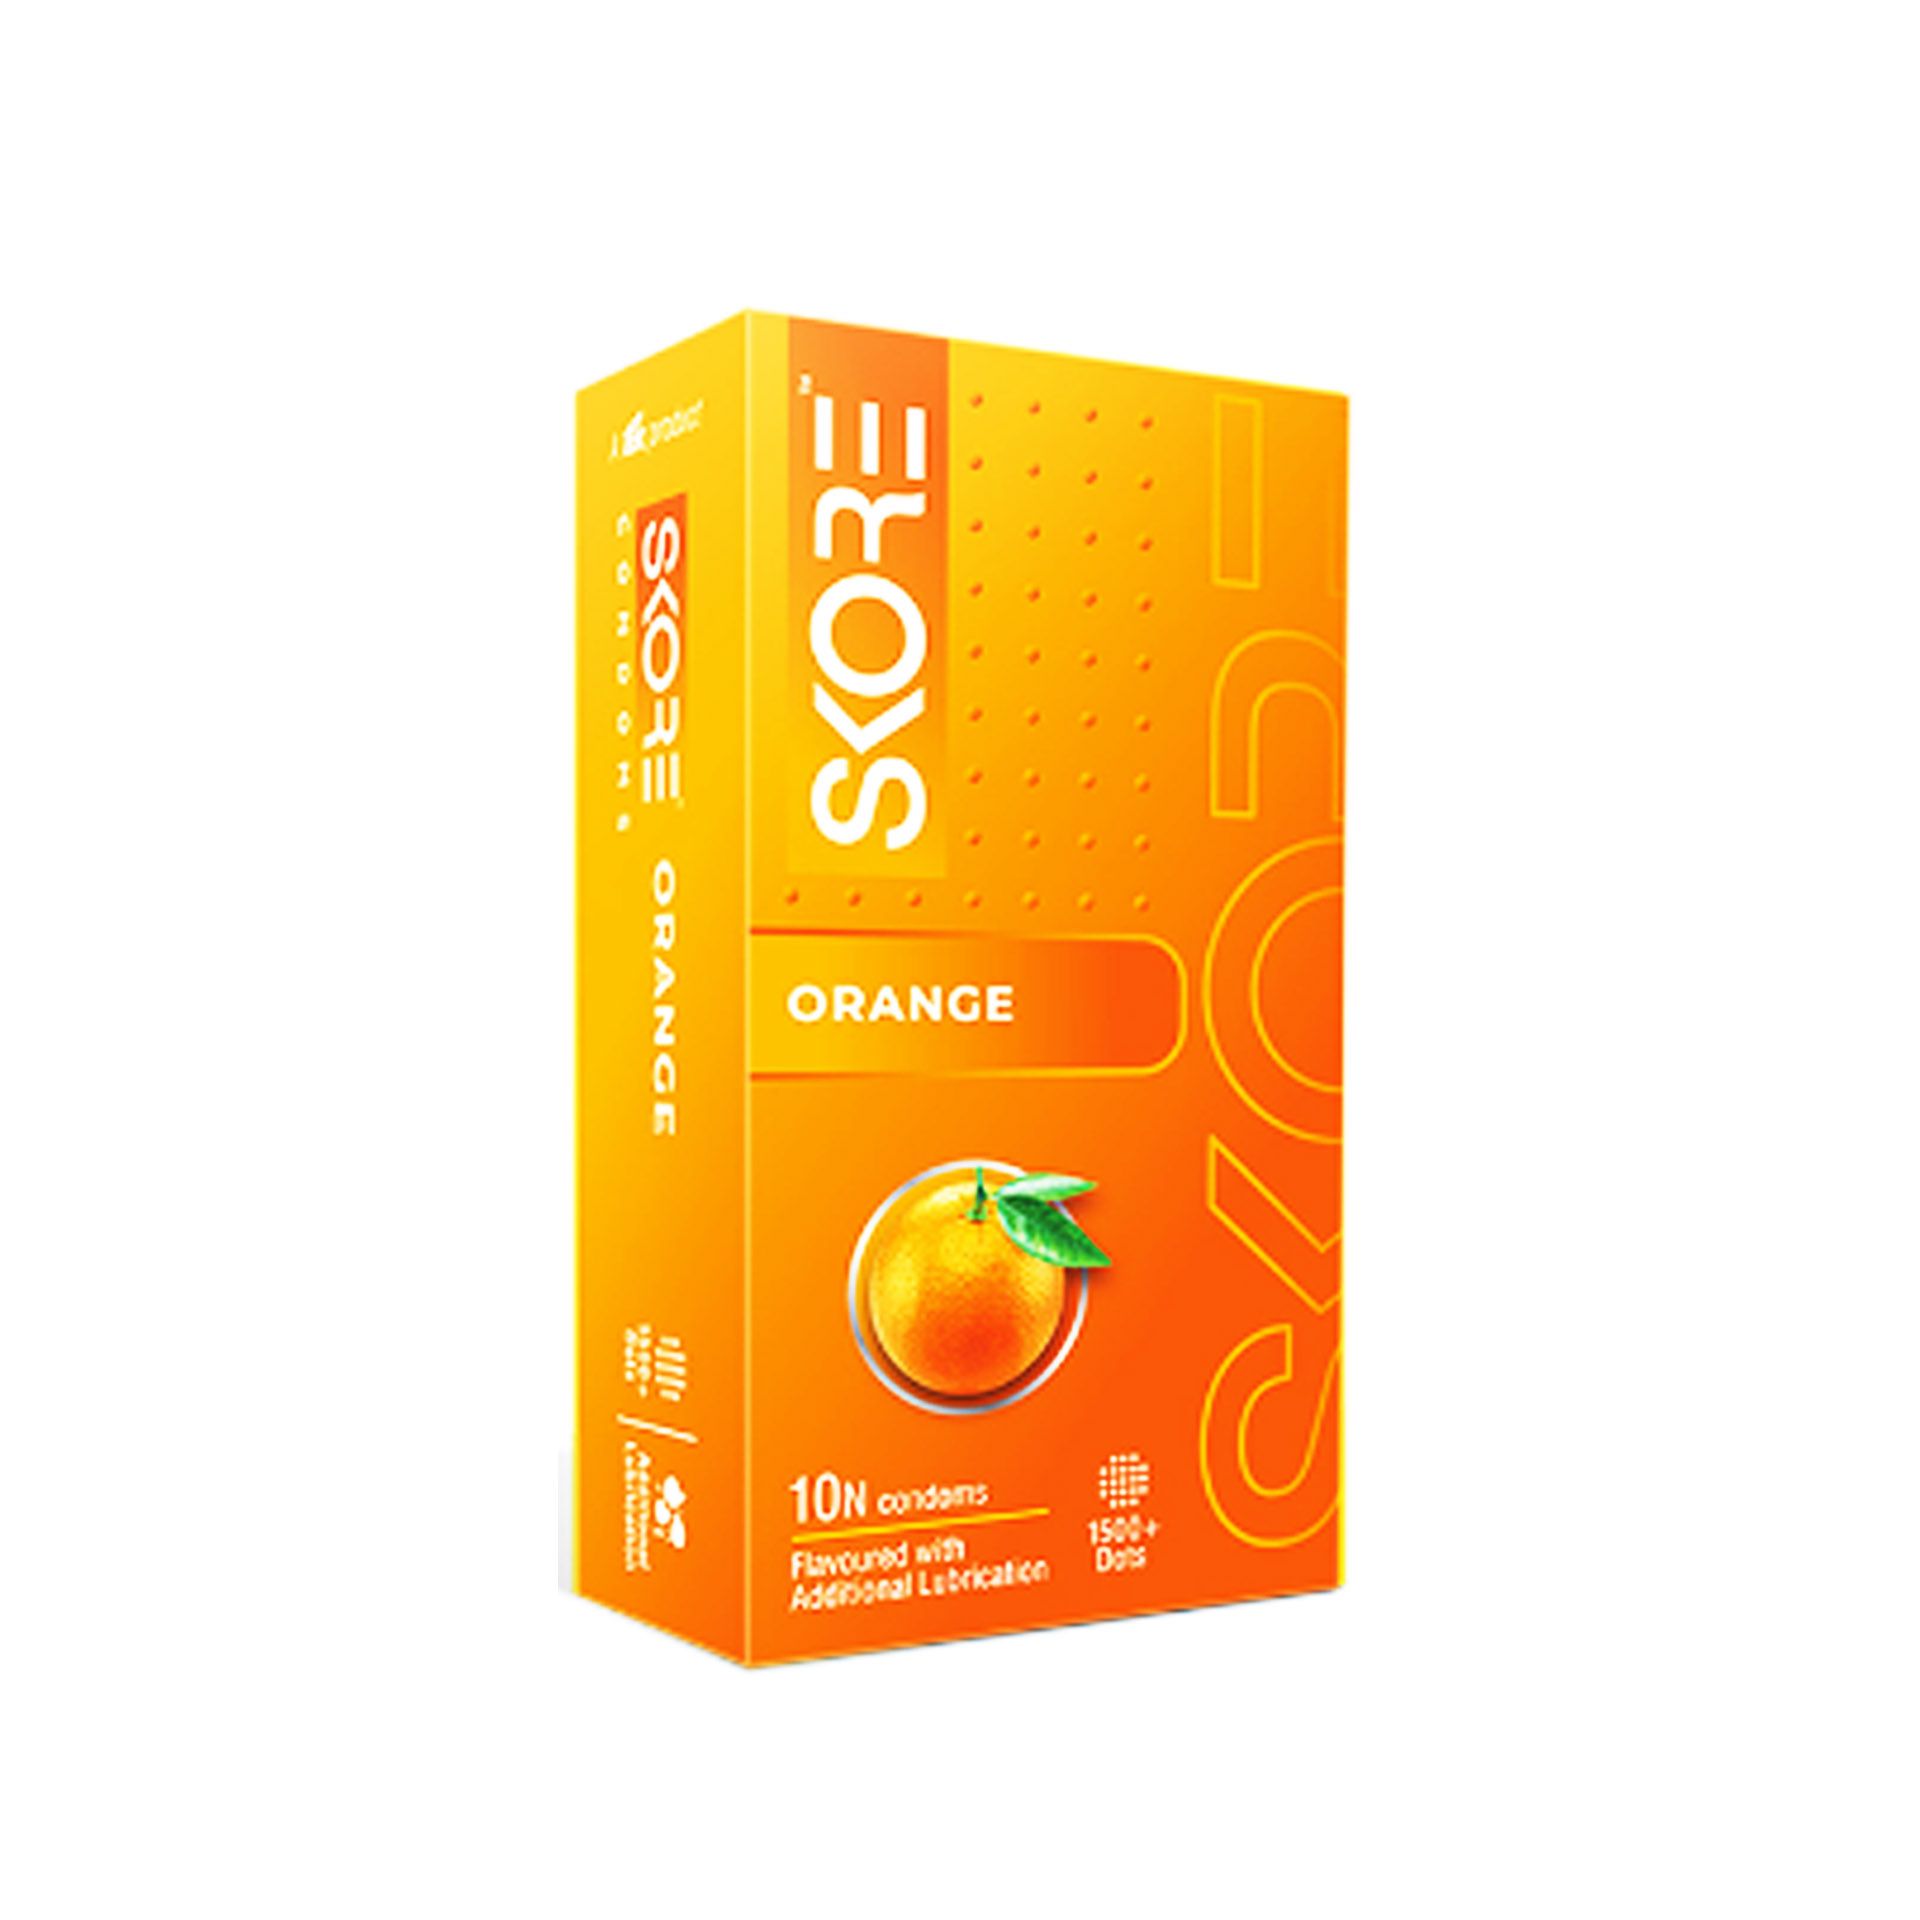 Skore Orange 1500+Dot Condoms 10's Pack  